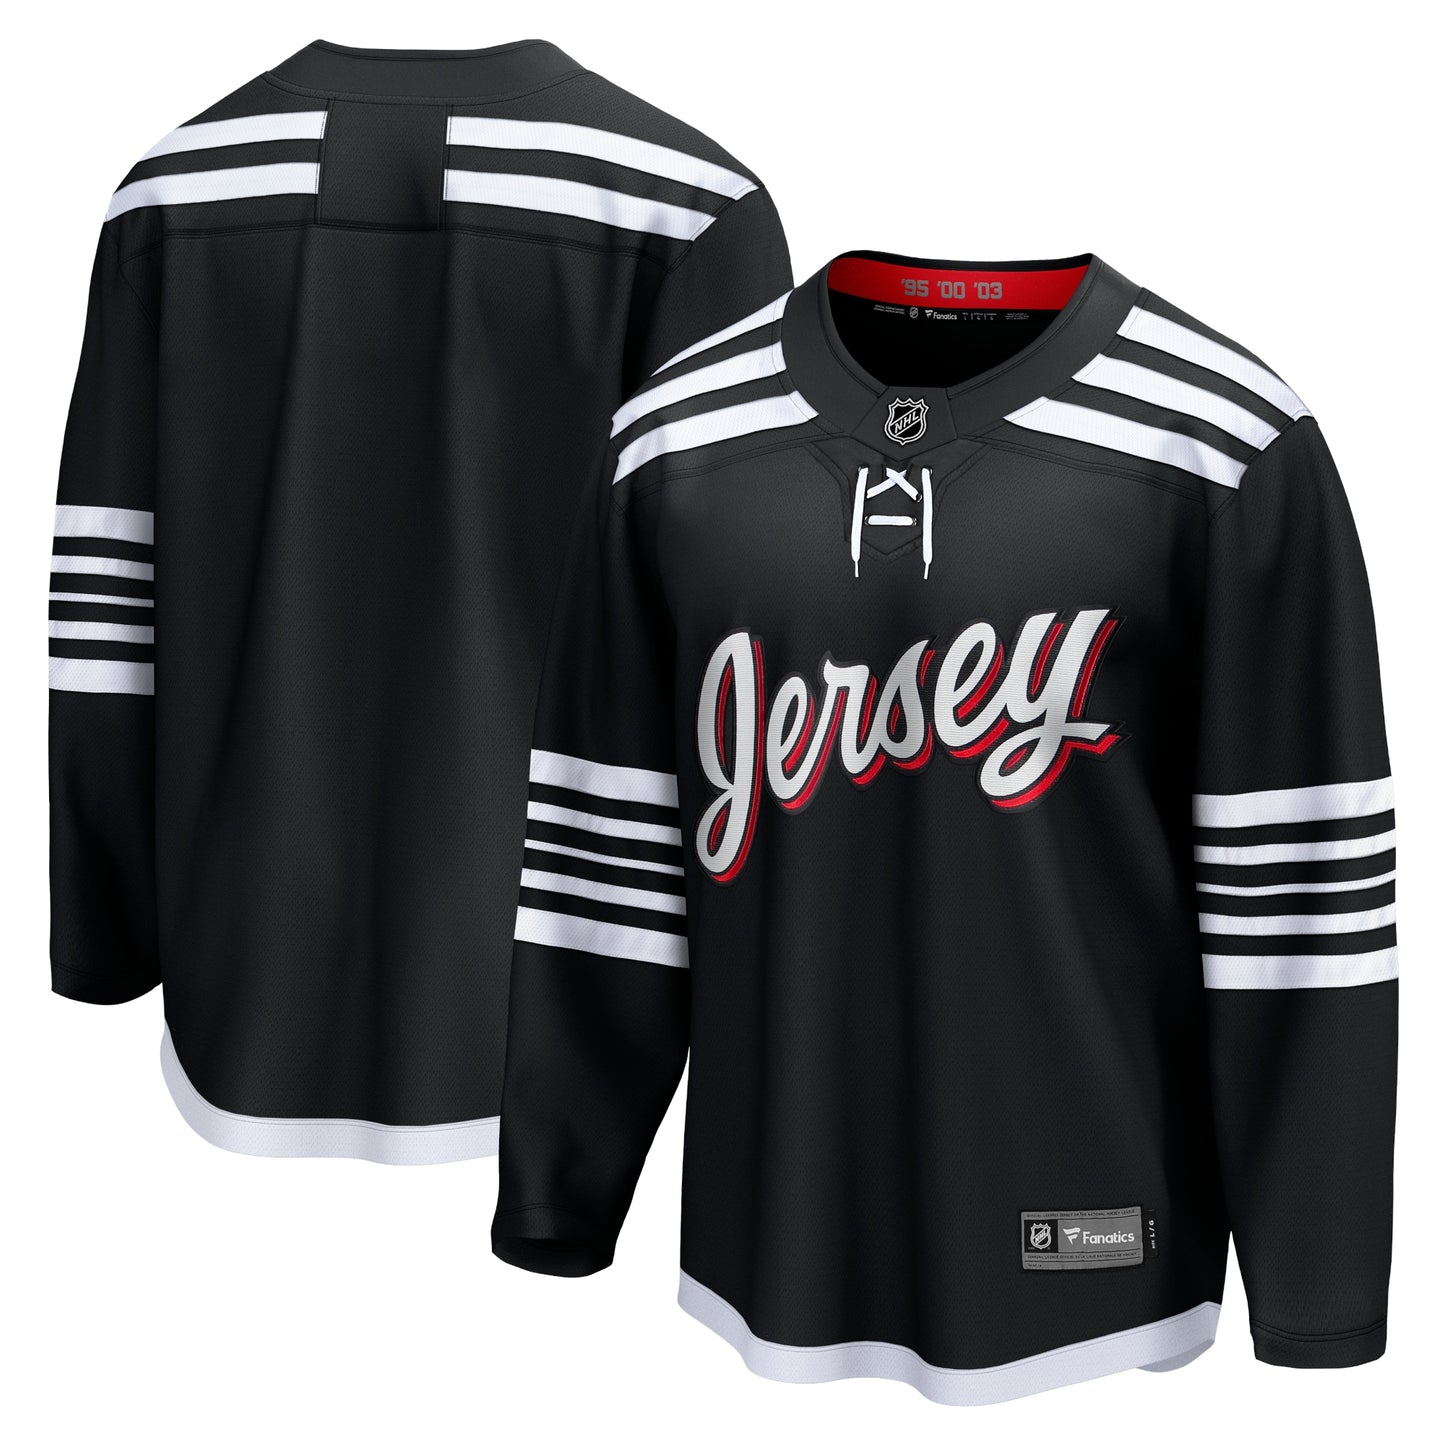 New Jersey Devils Fanatics Branded Alternate Premier Breakaway Team Jersey - Black